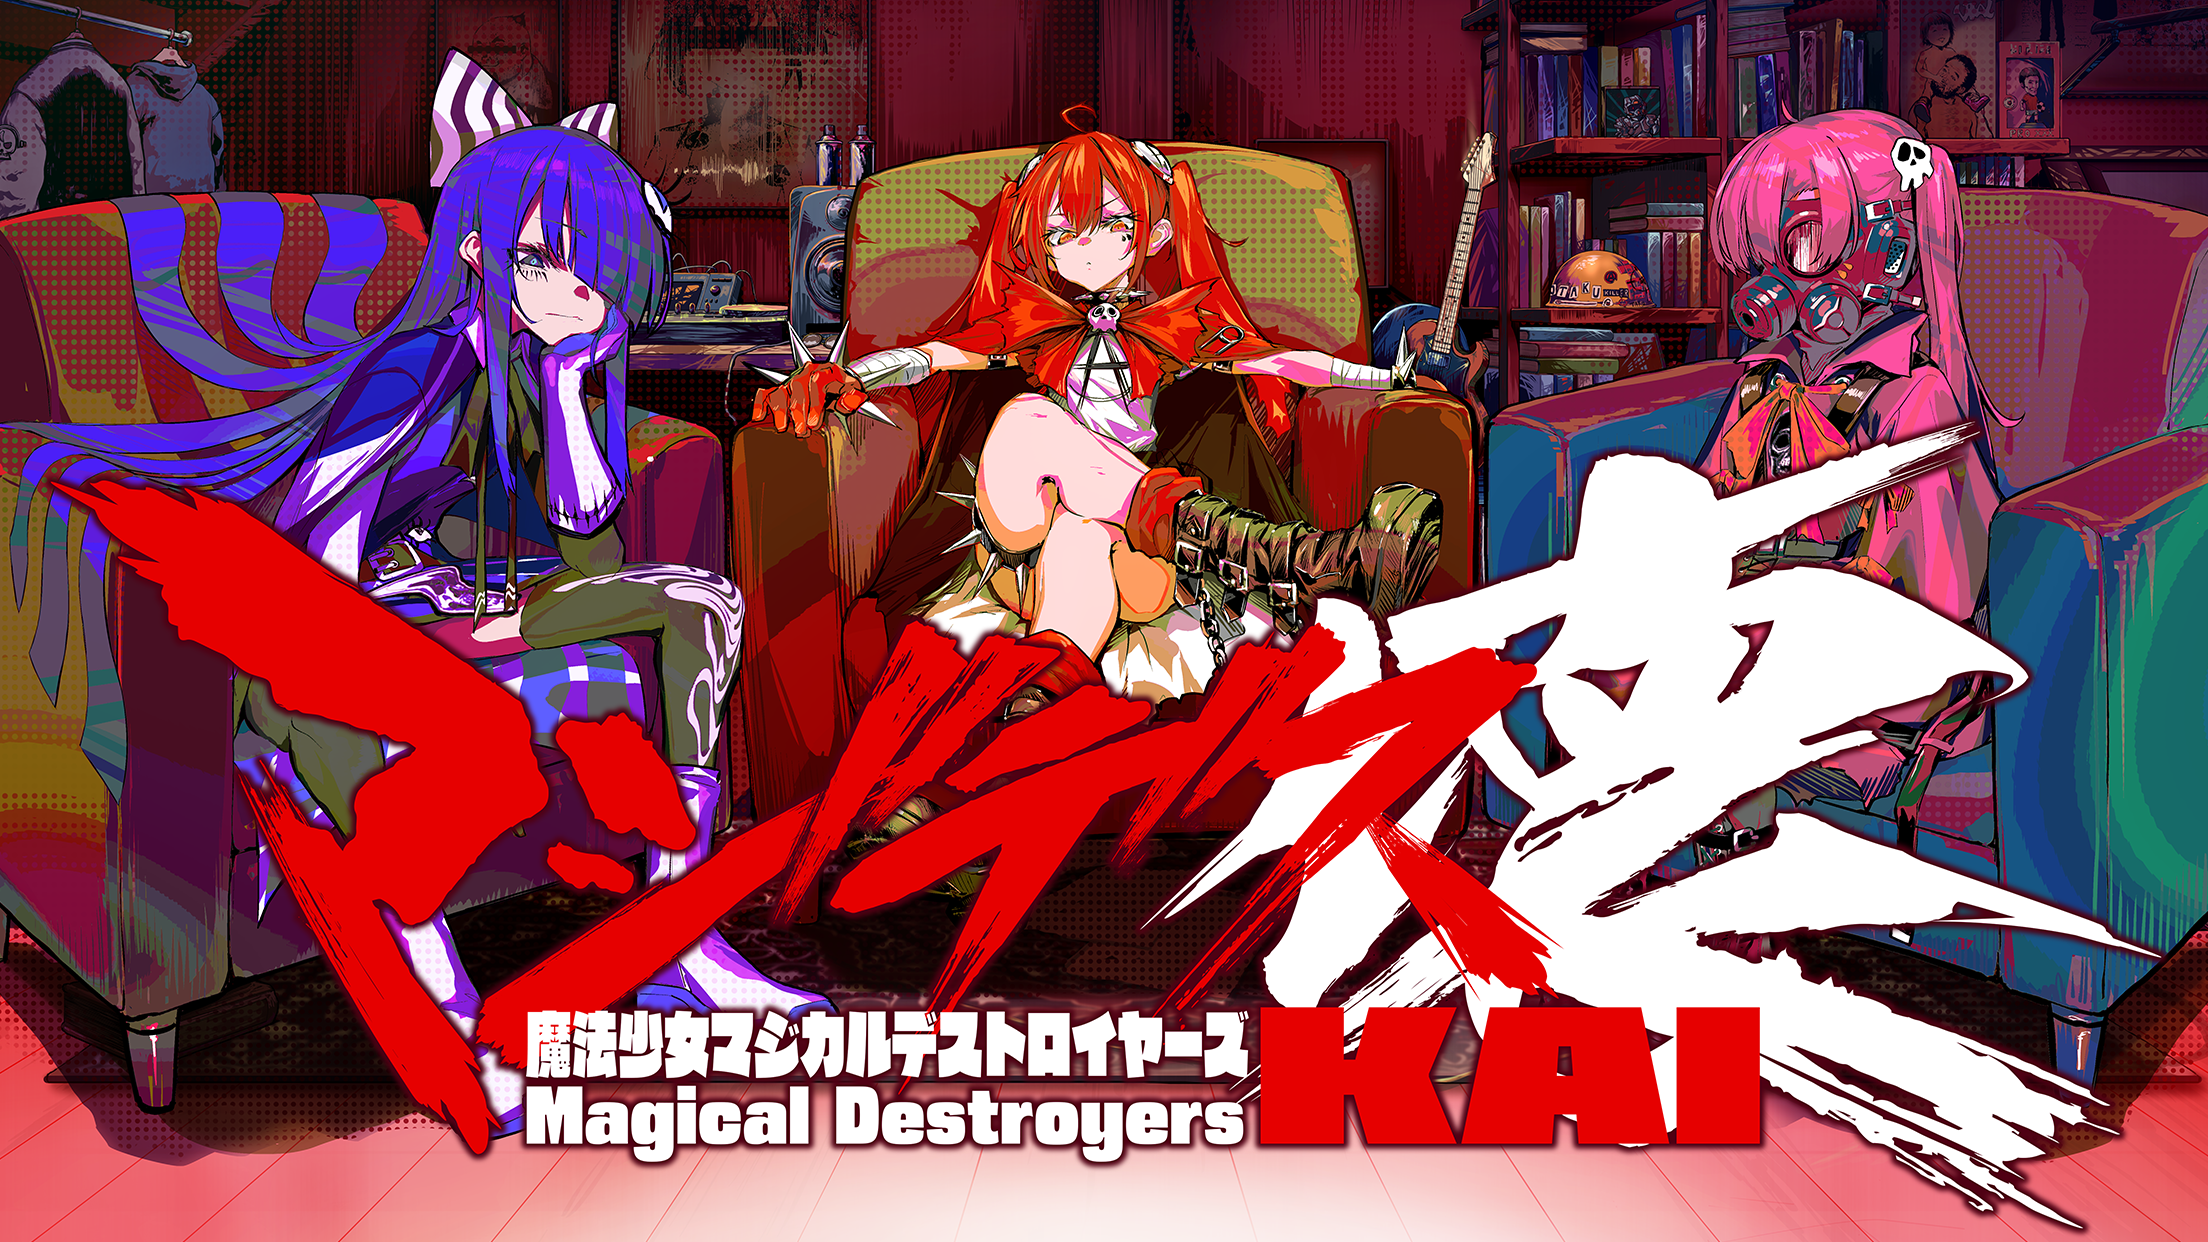 Screenshot 1 of Magides Kai Chica Mágica Destructores Mágicos 1.4.0